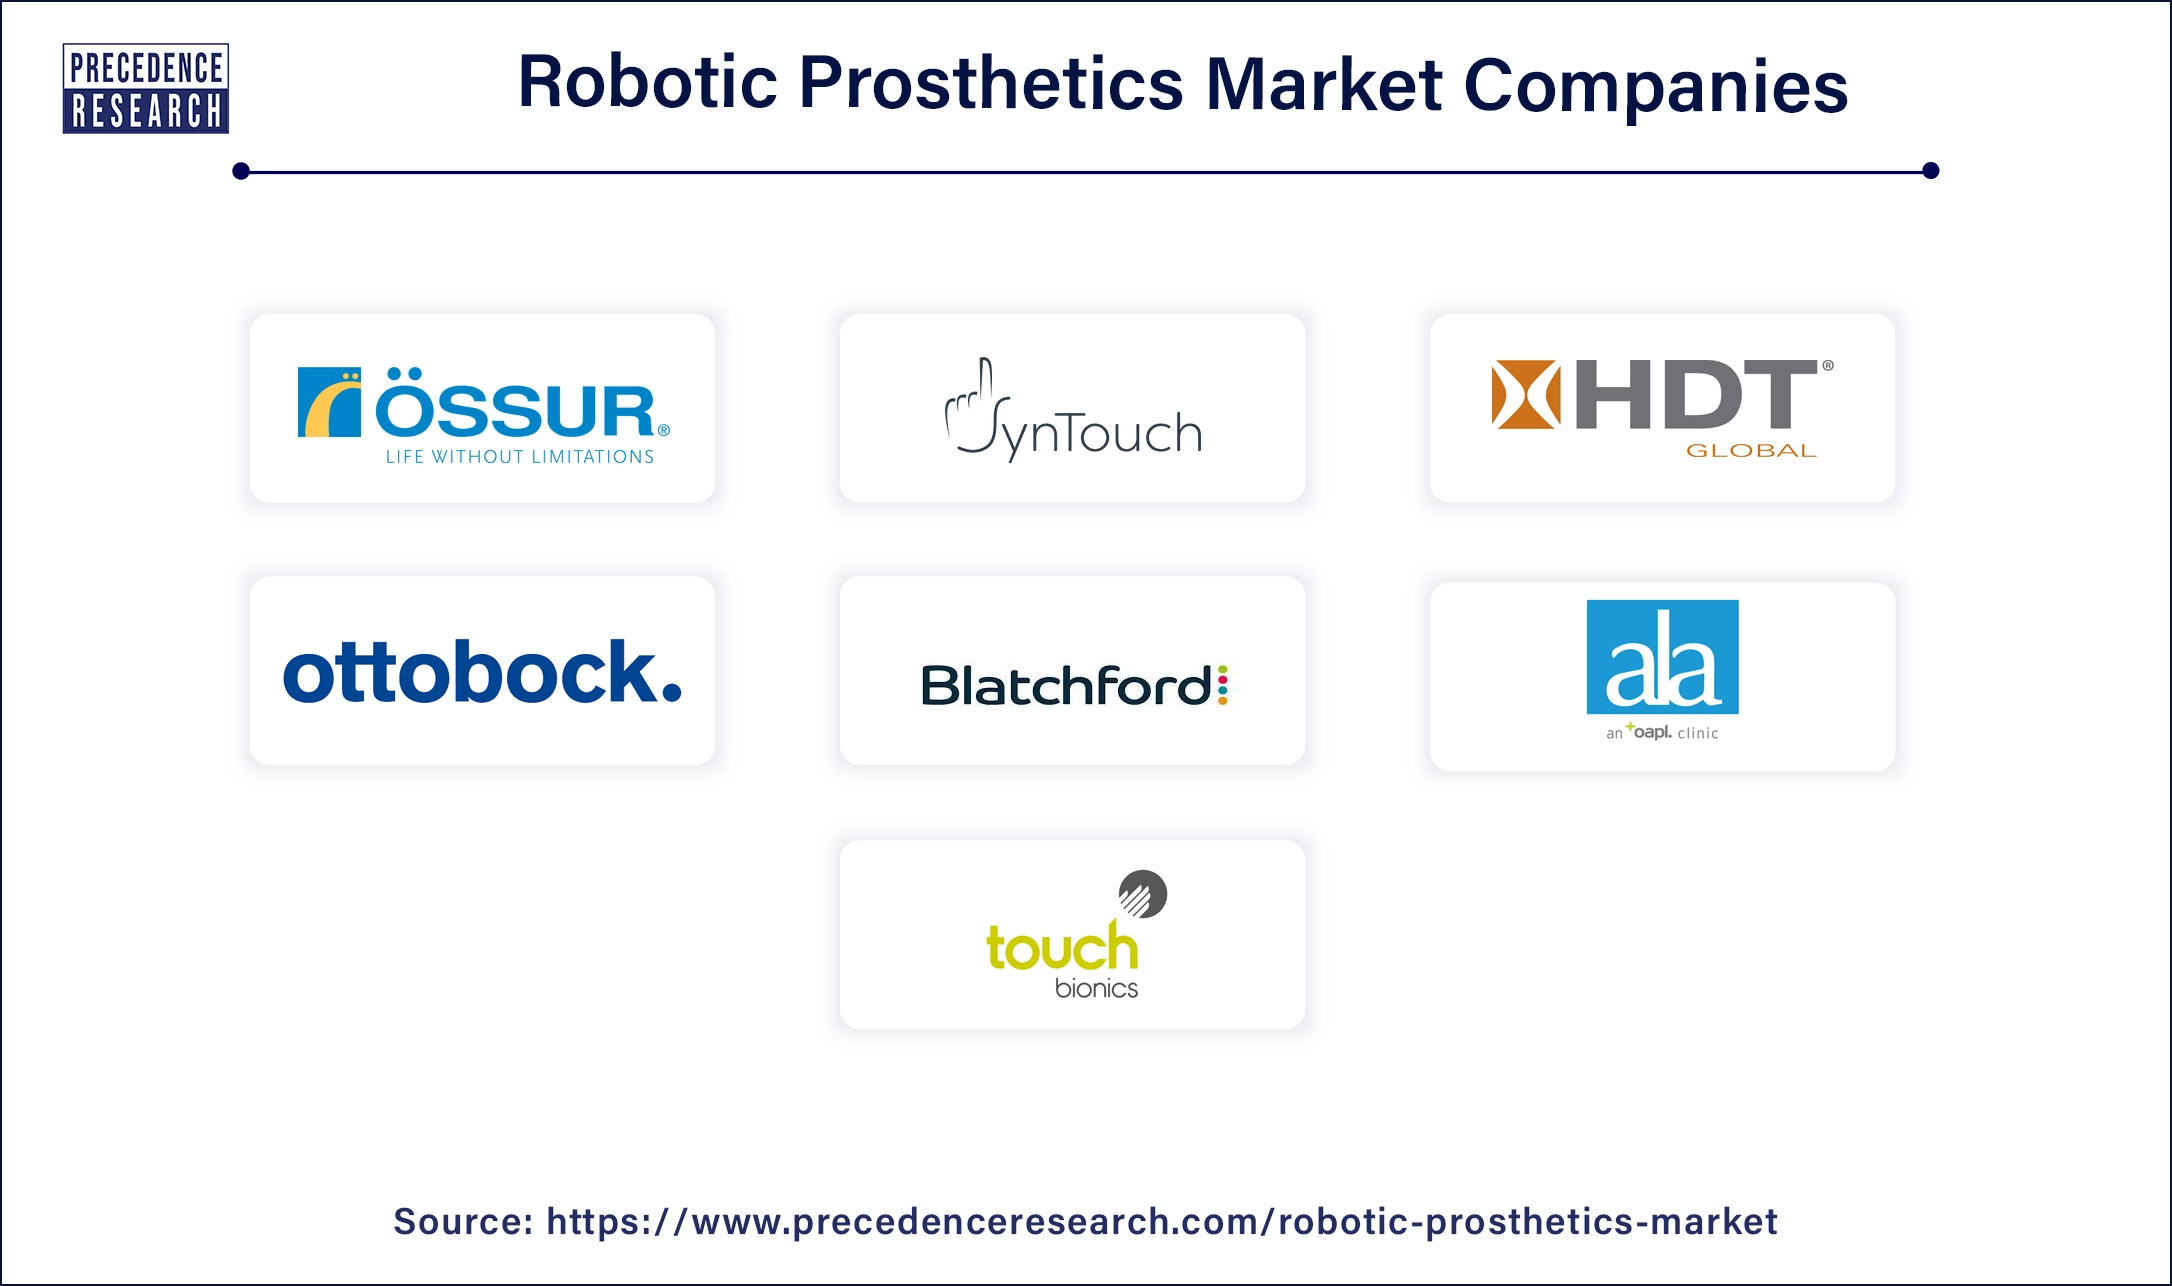 Robotic Prosthetics Companies